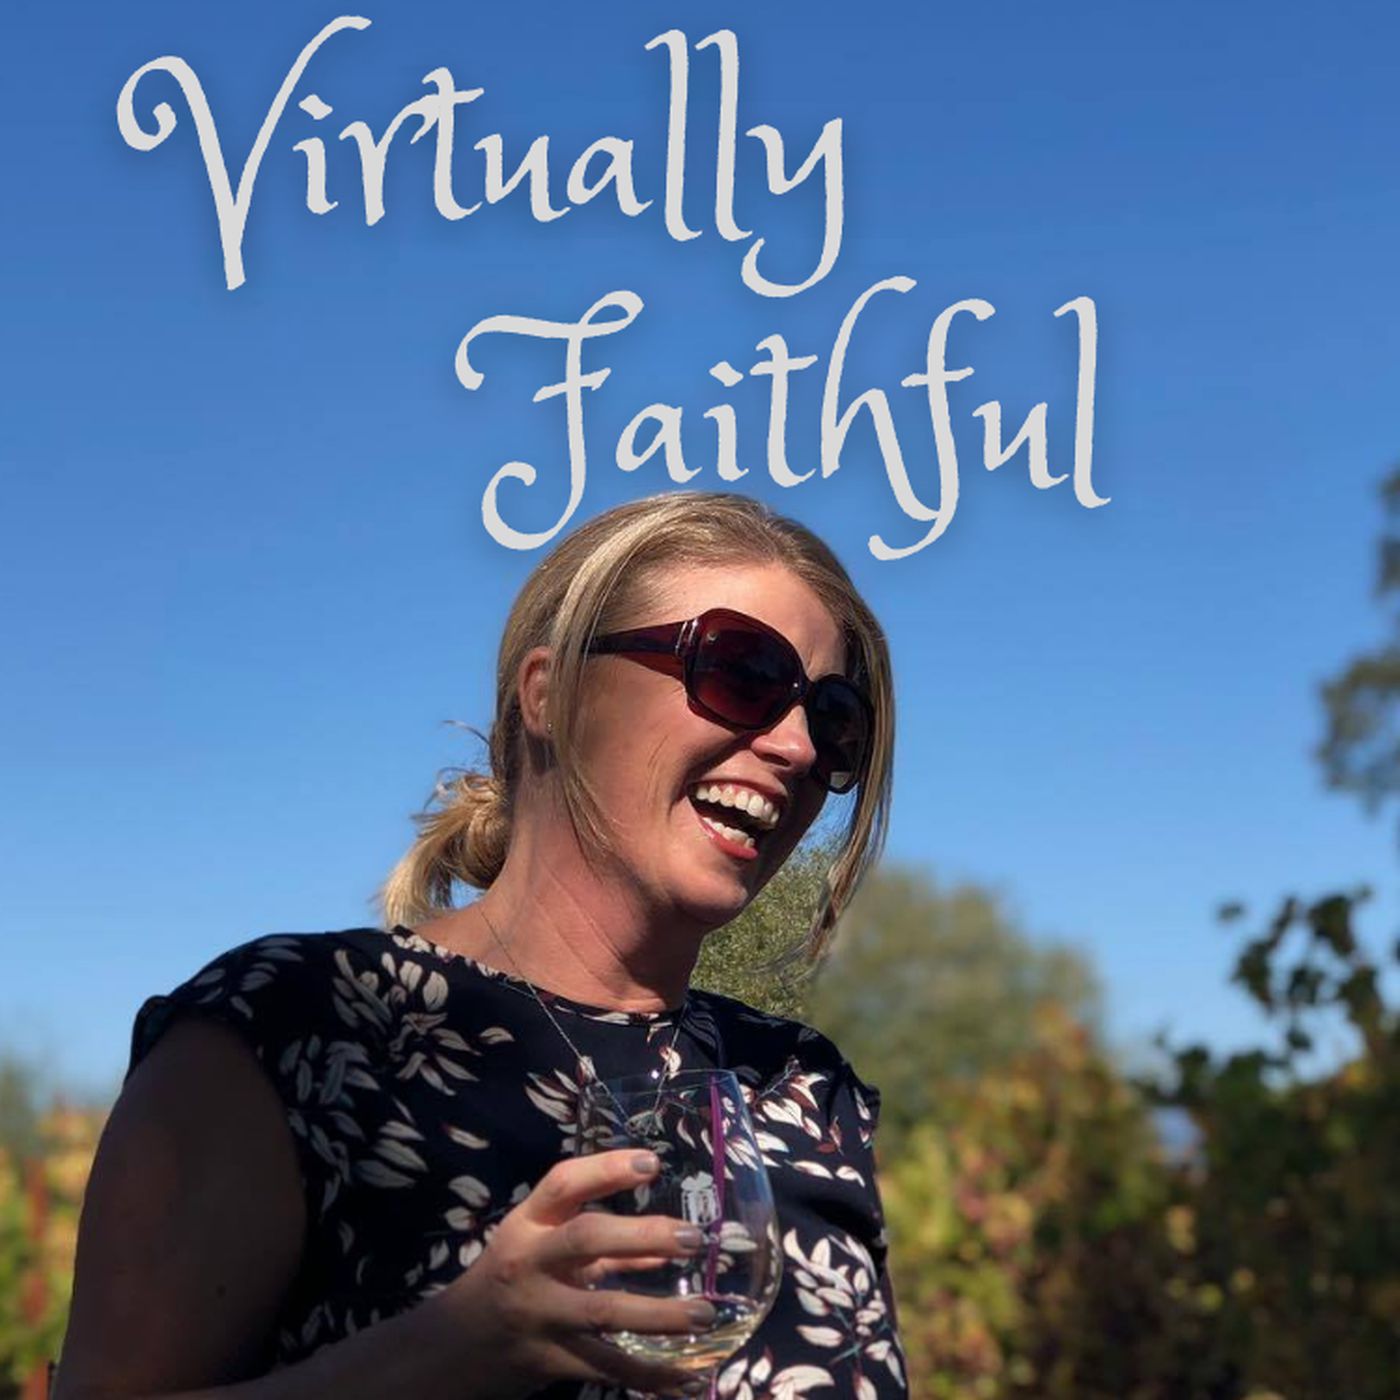 Virtually Faithful